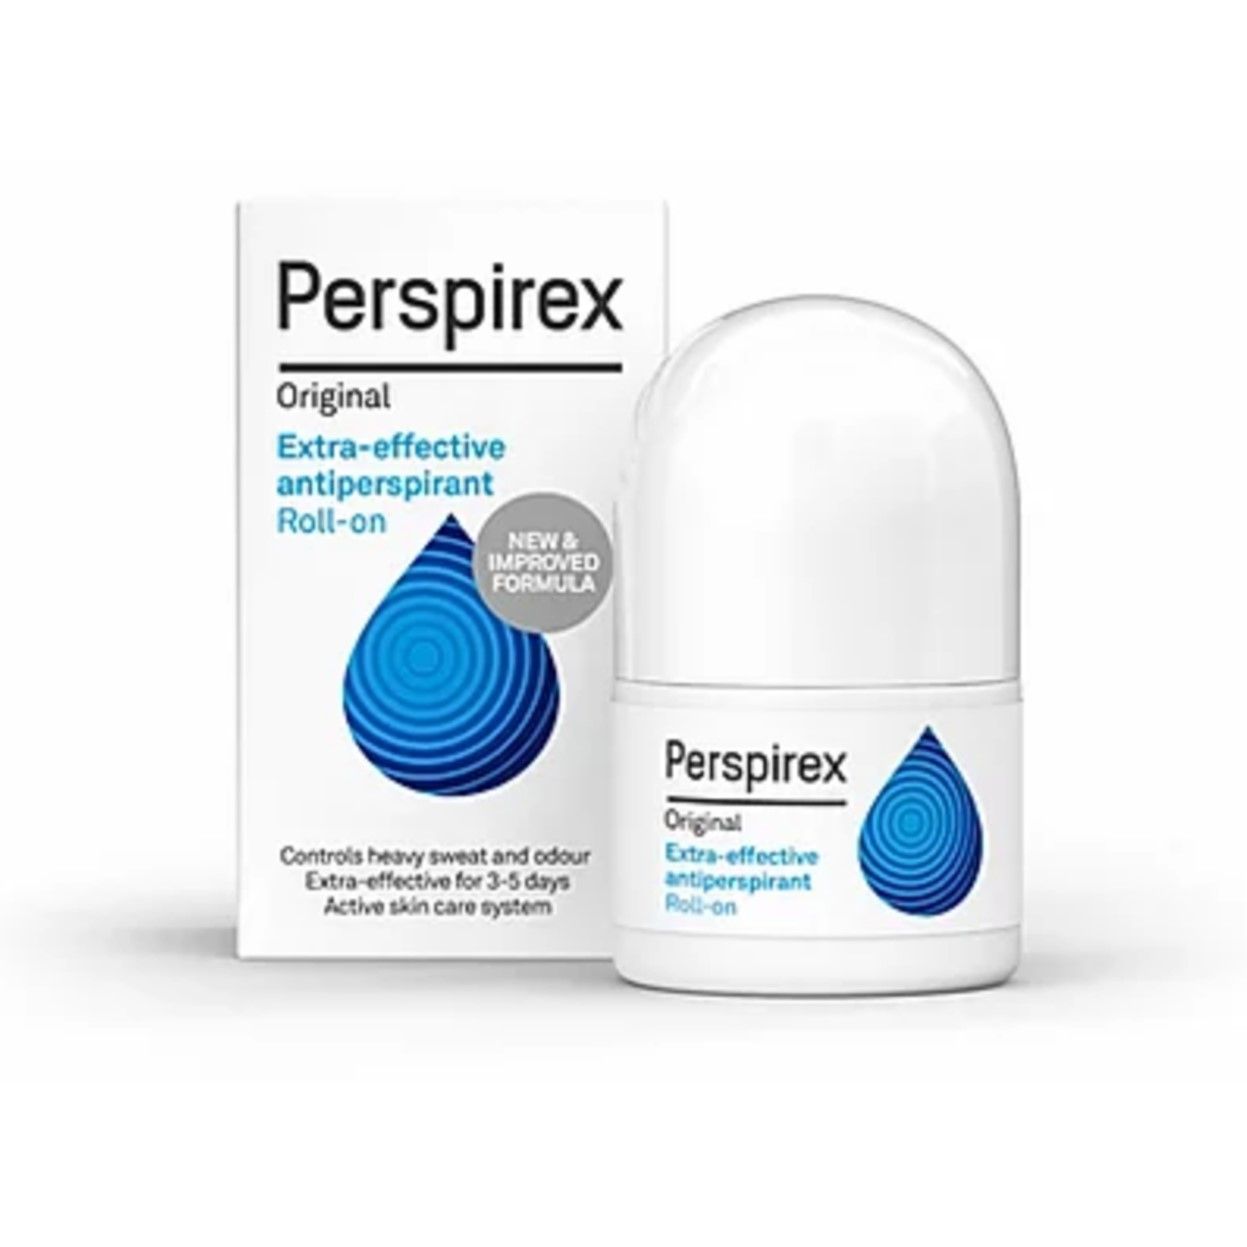  Lăn Khử Mùi Perspirex Original Cao Cấp 20ml - T108 